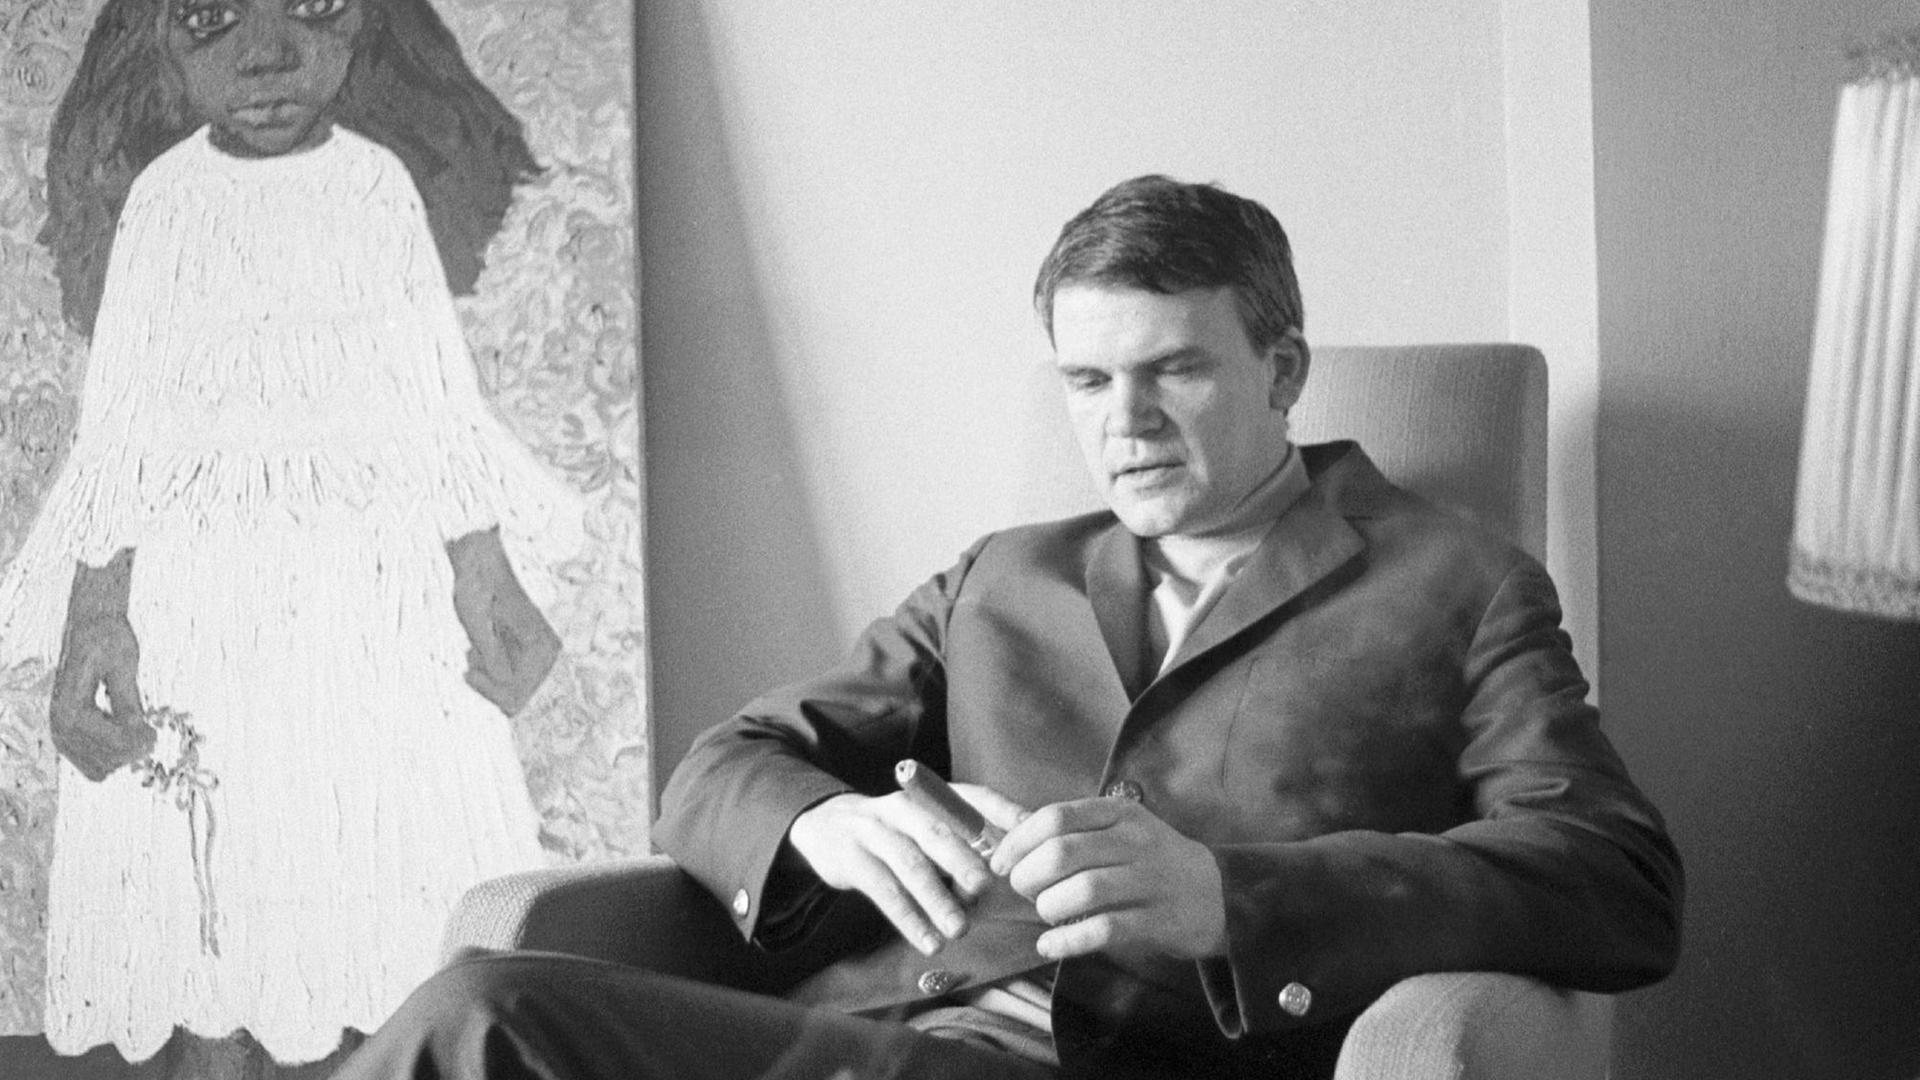 Milan Kundera sitzt mit einer Zigarre in der Hand auf einem Sessel. Rechts von ihm steht eine Lampe, links von ihm steht das Gemälde eines Mädchens. Die Aufnahme ist schwarz weiß.